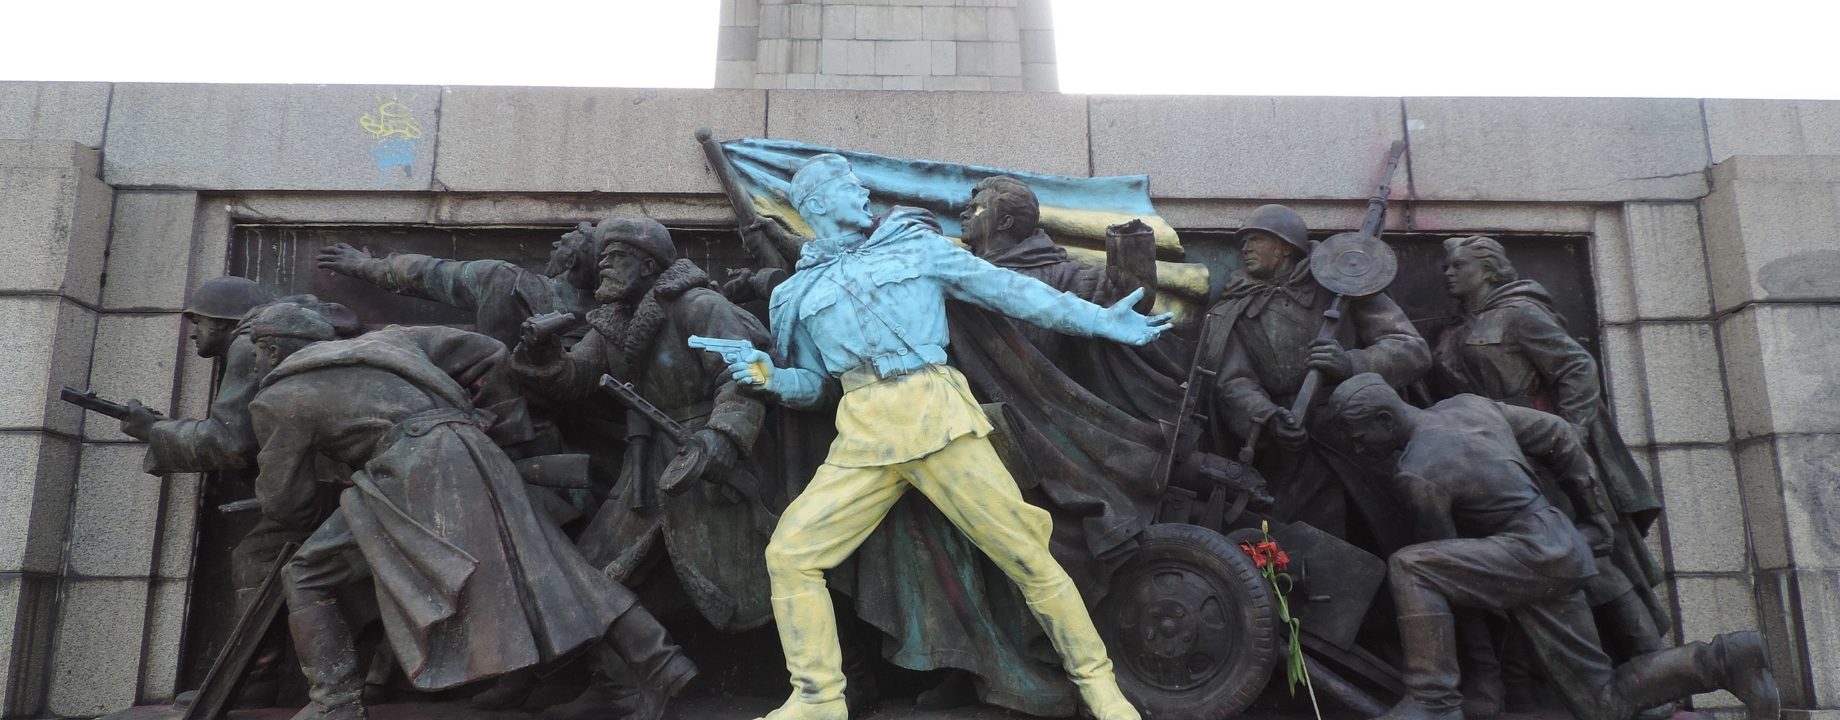 2560px Sofia Monument to Soviet Army Glory to Ukraine 20140224 1